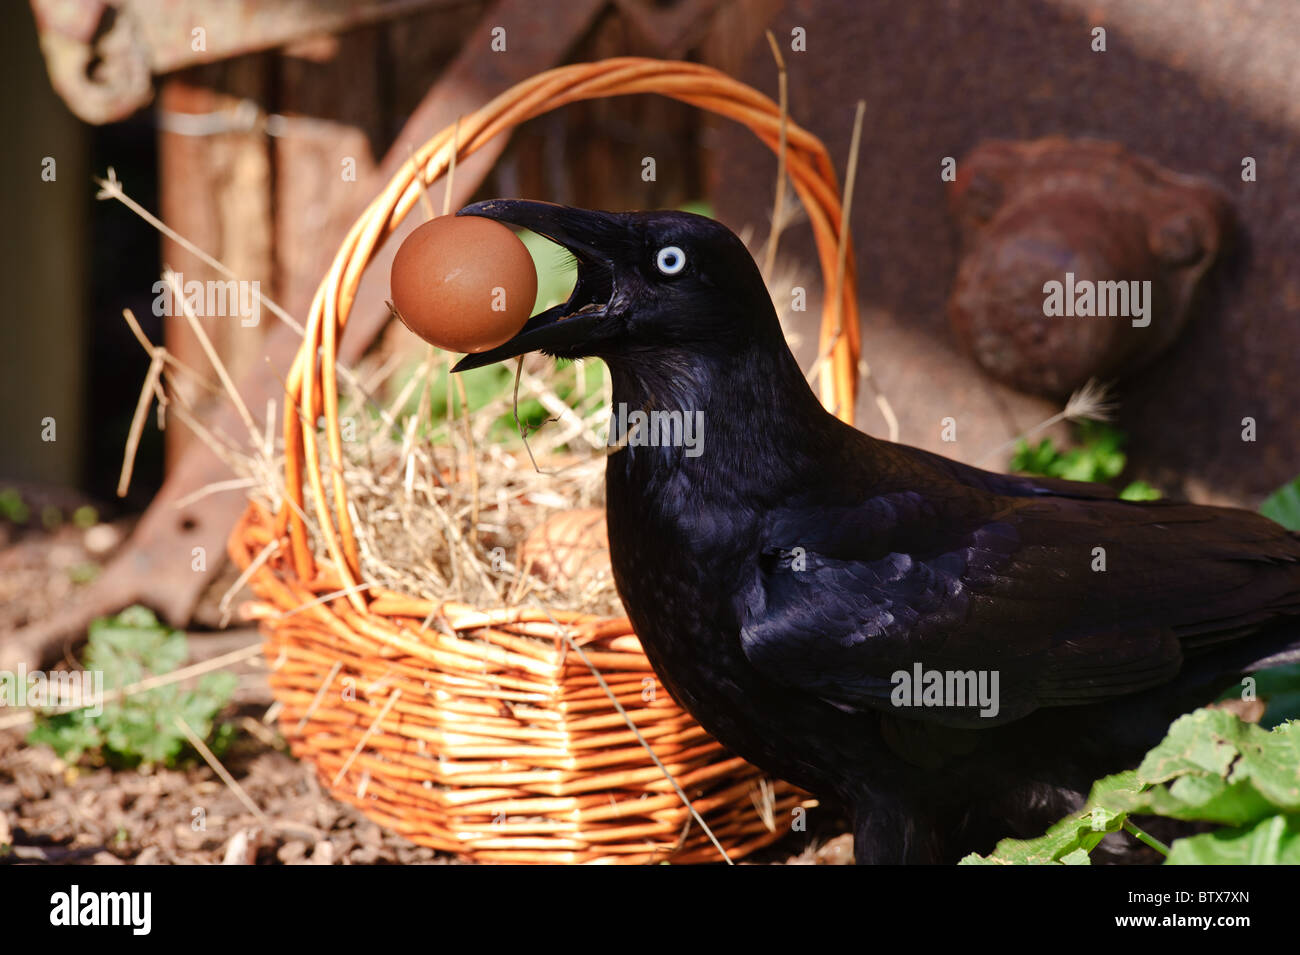 Crow roba los huevos del gallinero Foto de stock